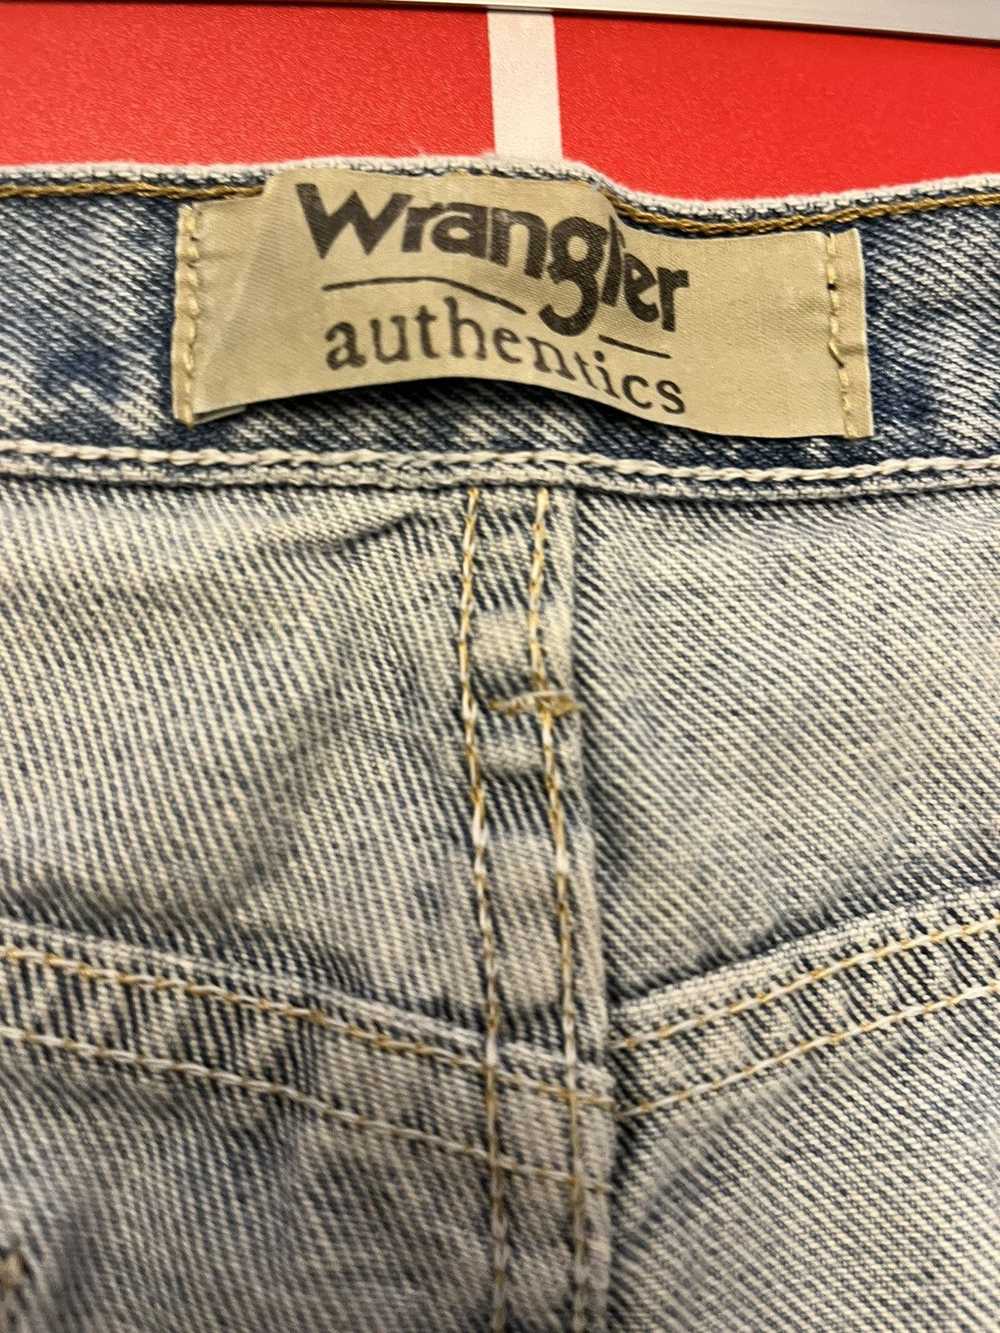 Wrangler Wrangler jeans - image 4